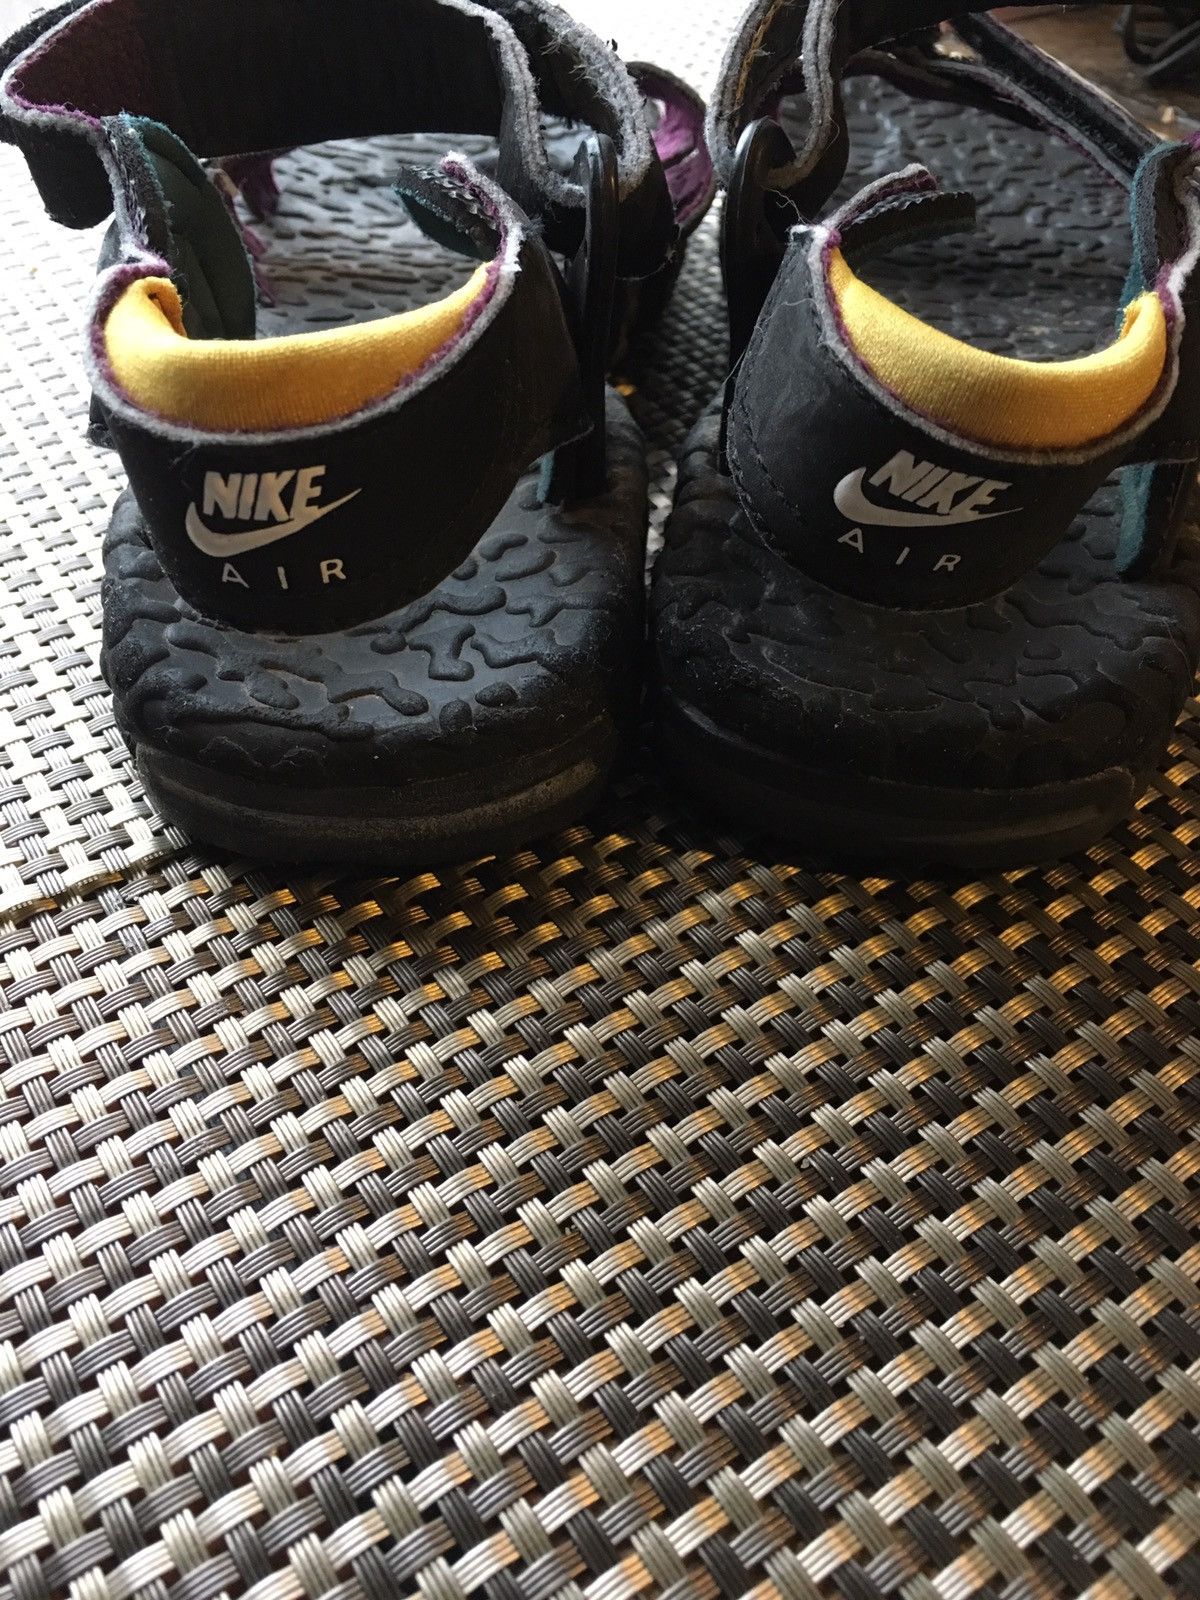 Nike ACG Vintage 90's Nike Air ACG Deschutz Sandals Mens Size 9 Size US 9 / EU 42 - 2 Preview